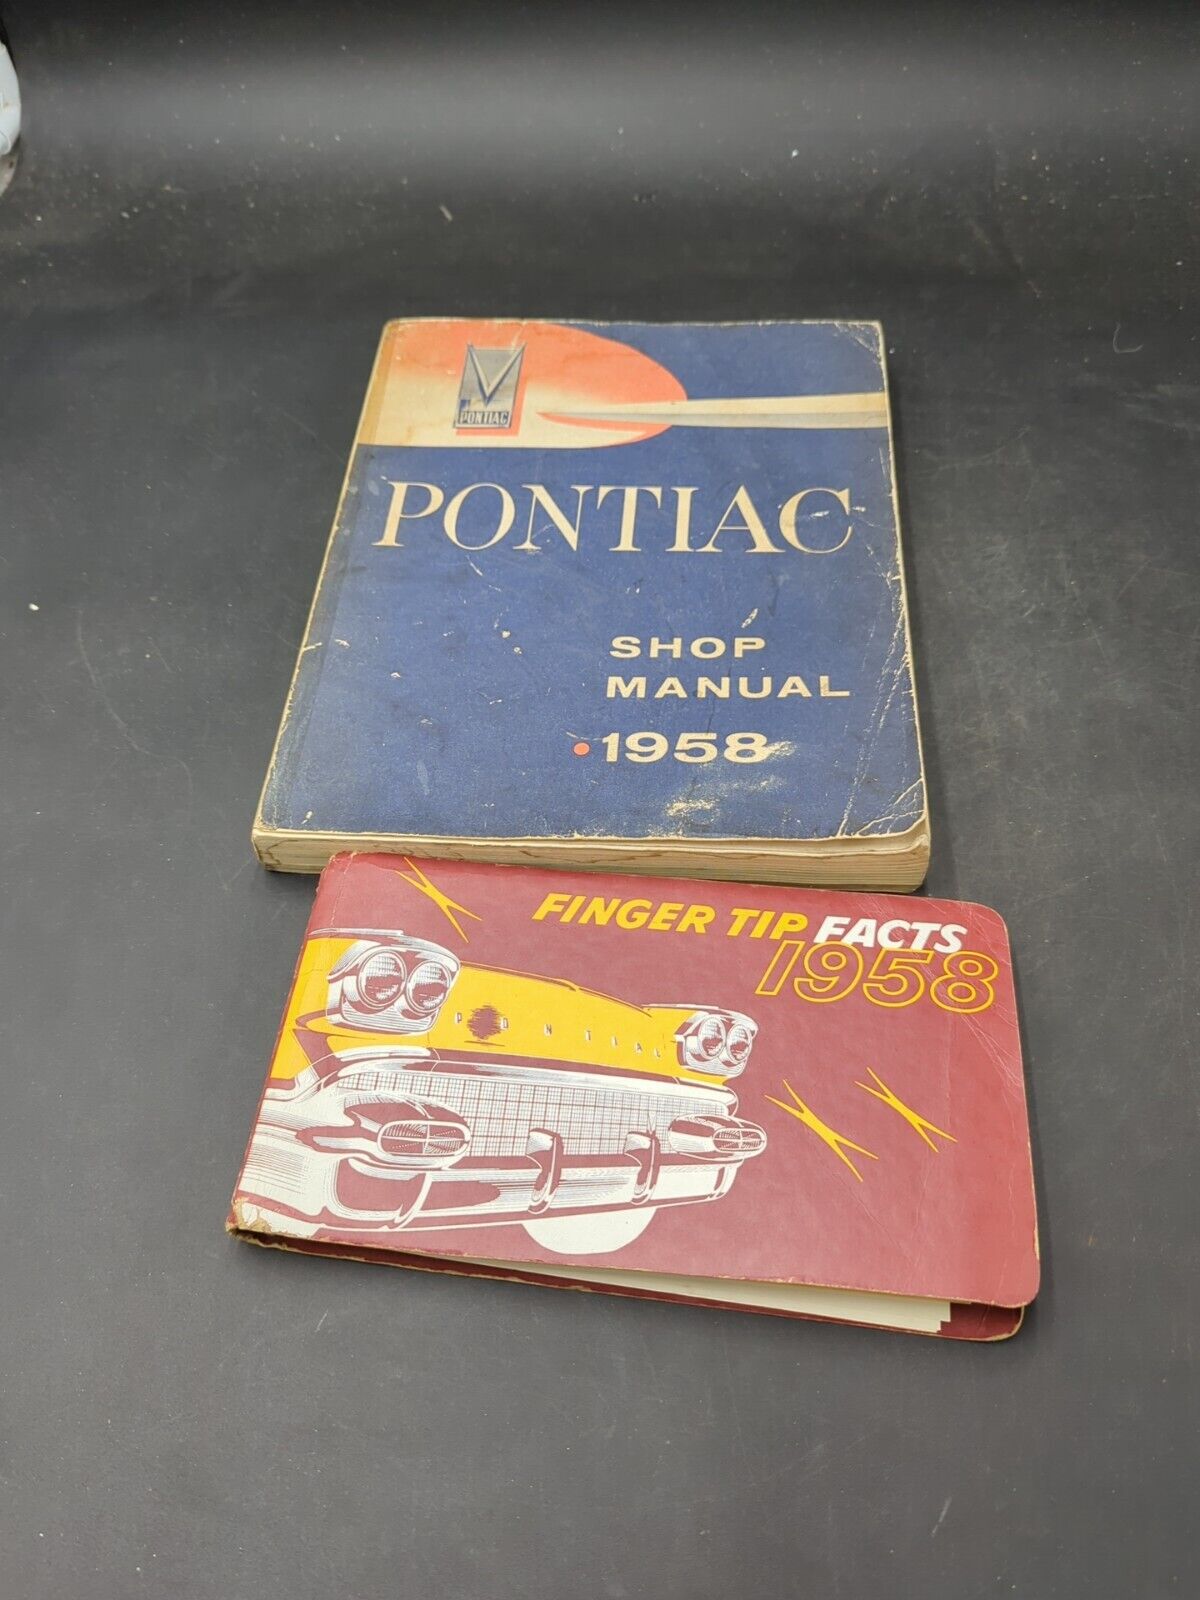 1958 Pontiac Finger Tips Facts Book Album Dealer Rare Original With Shop Manual